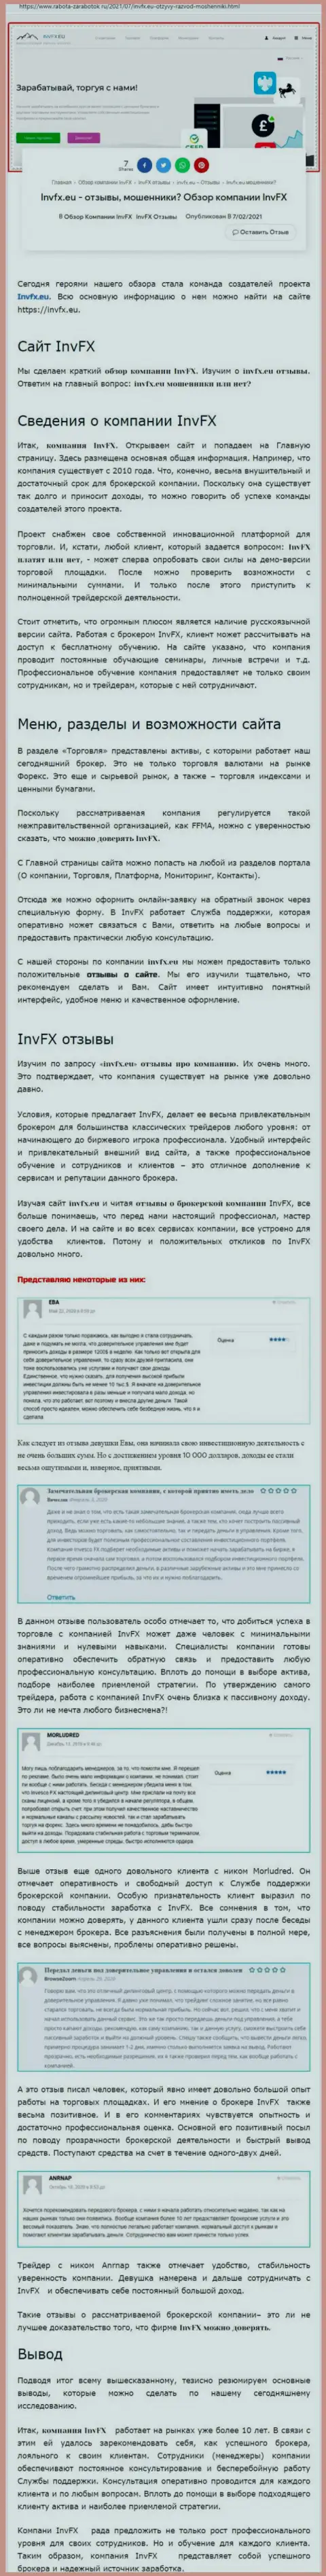 Информационный материал ресурса rabota zarabotok ru об forex дилинговой компании ИНВФИкс